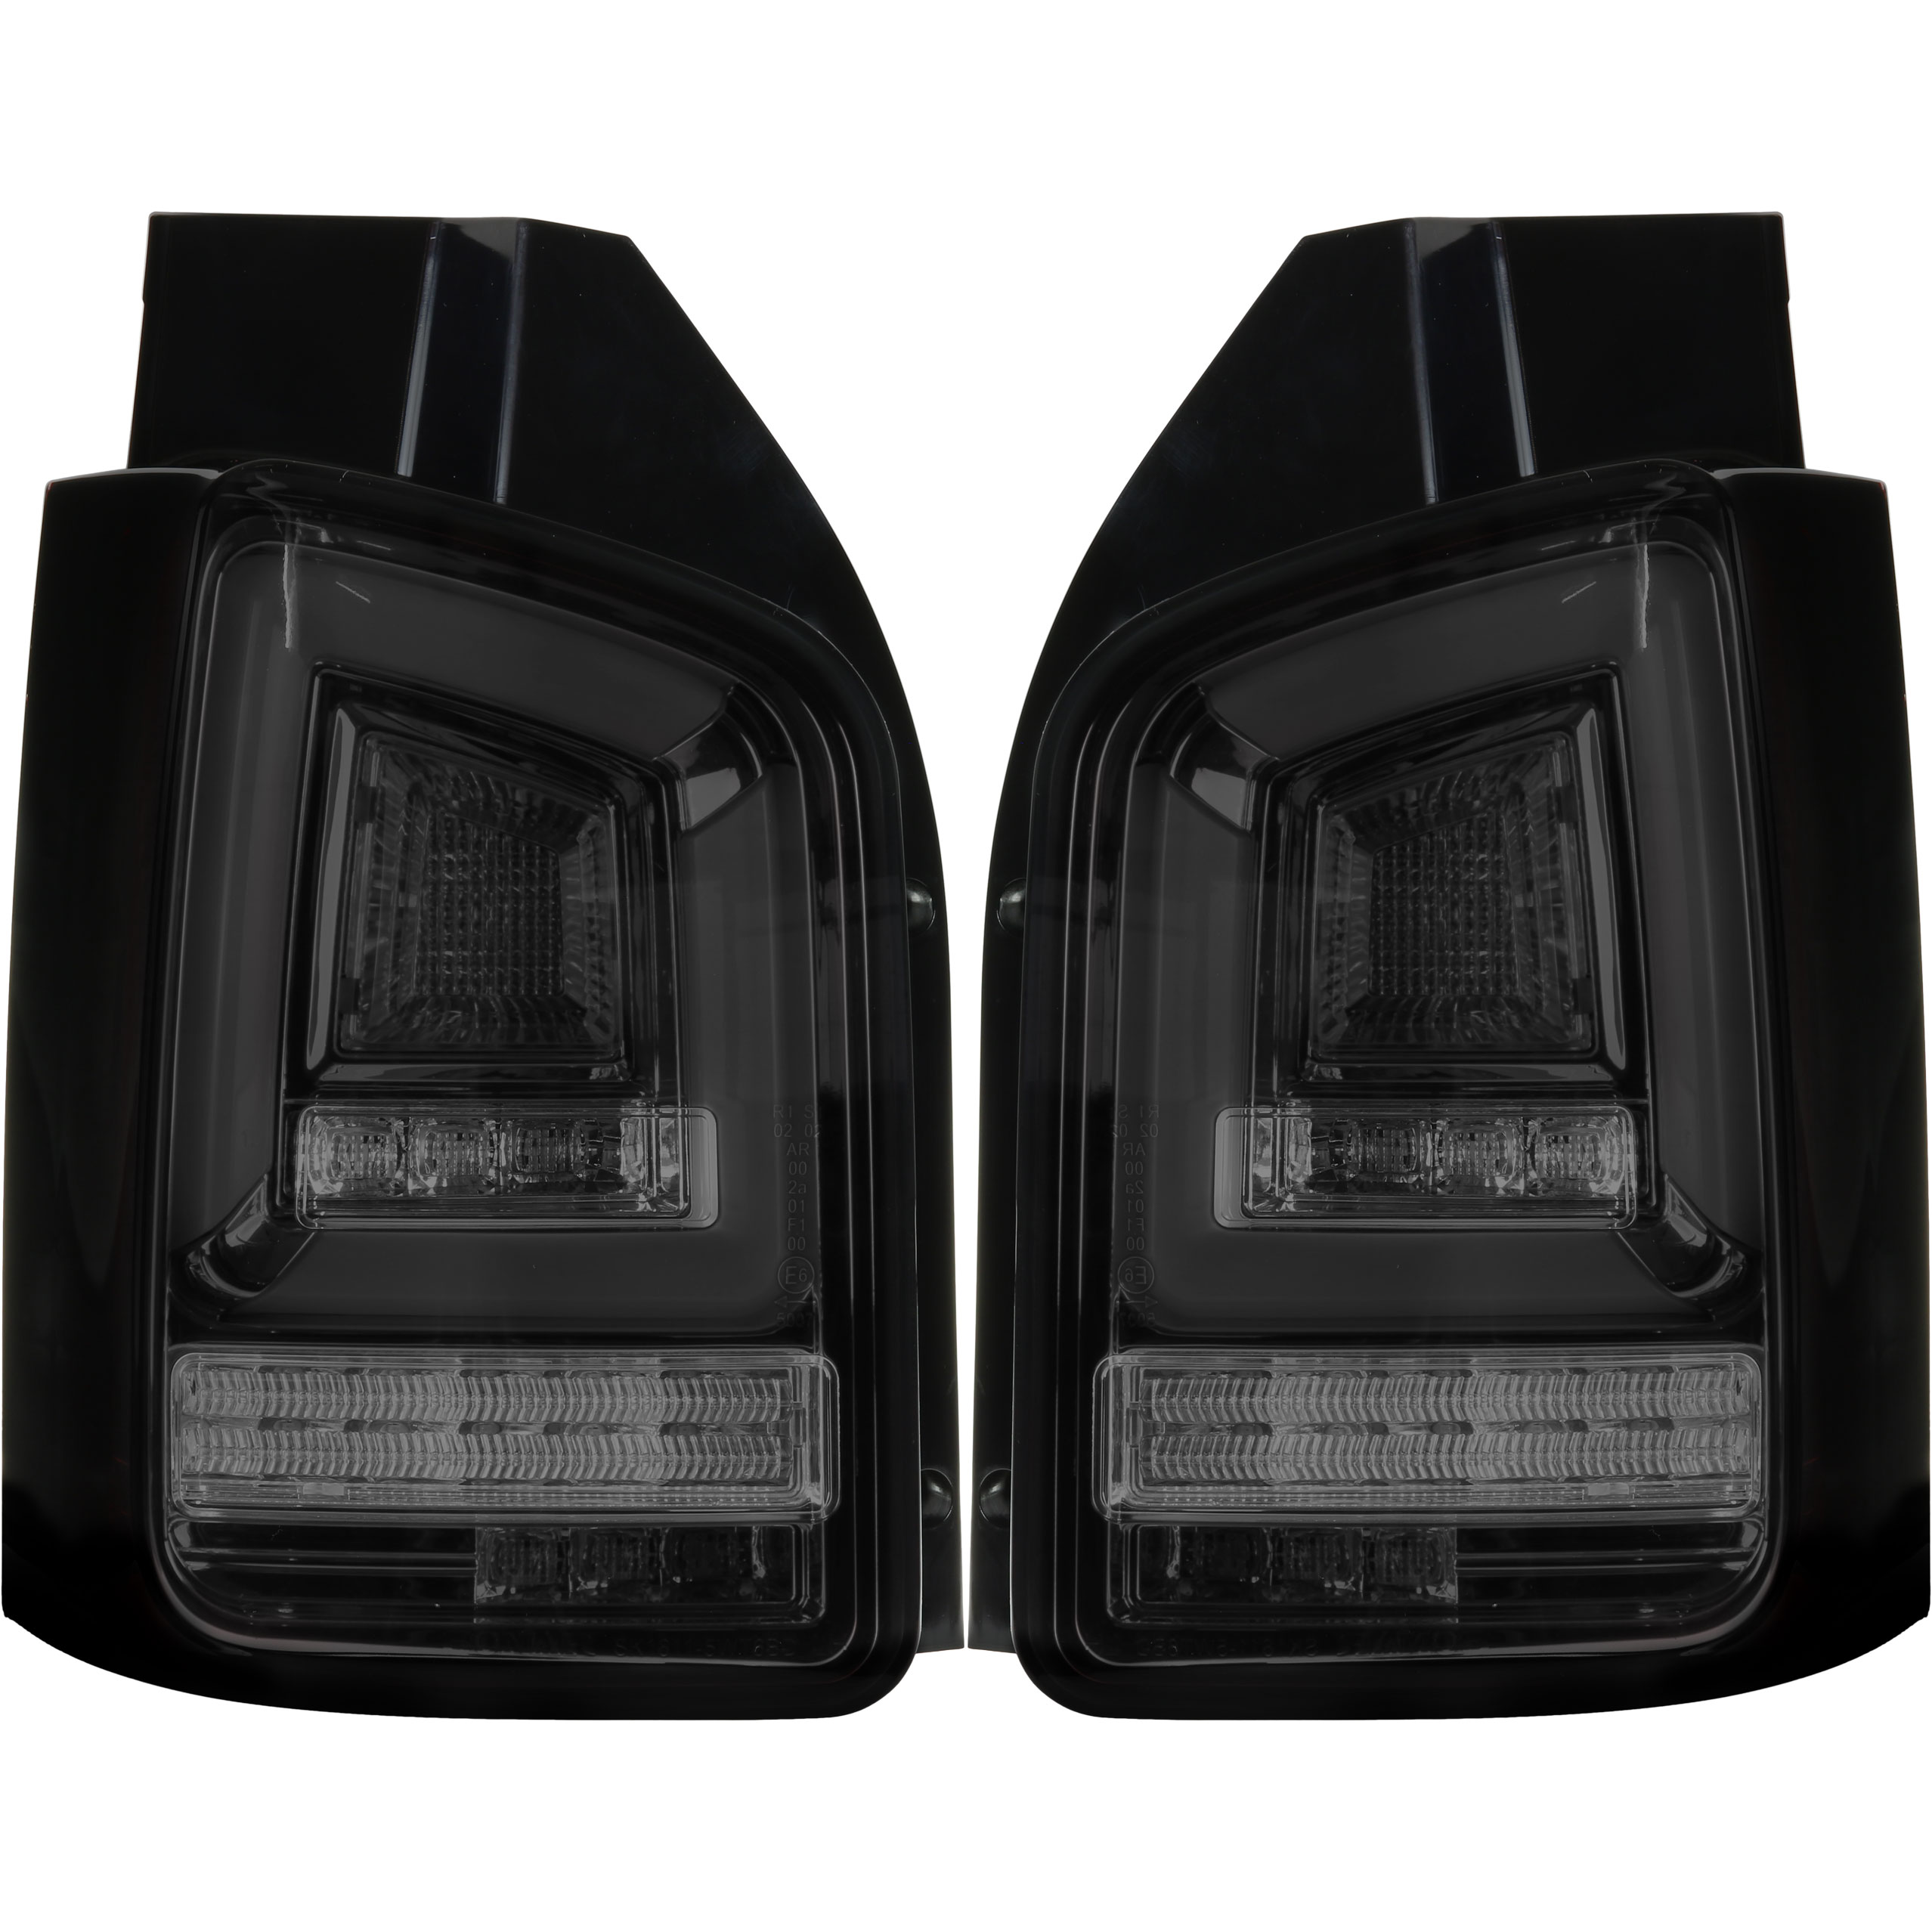 Rückleuchten Set Voll LED Lightbar für VW T5 Bj. 03-09 schwarz für